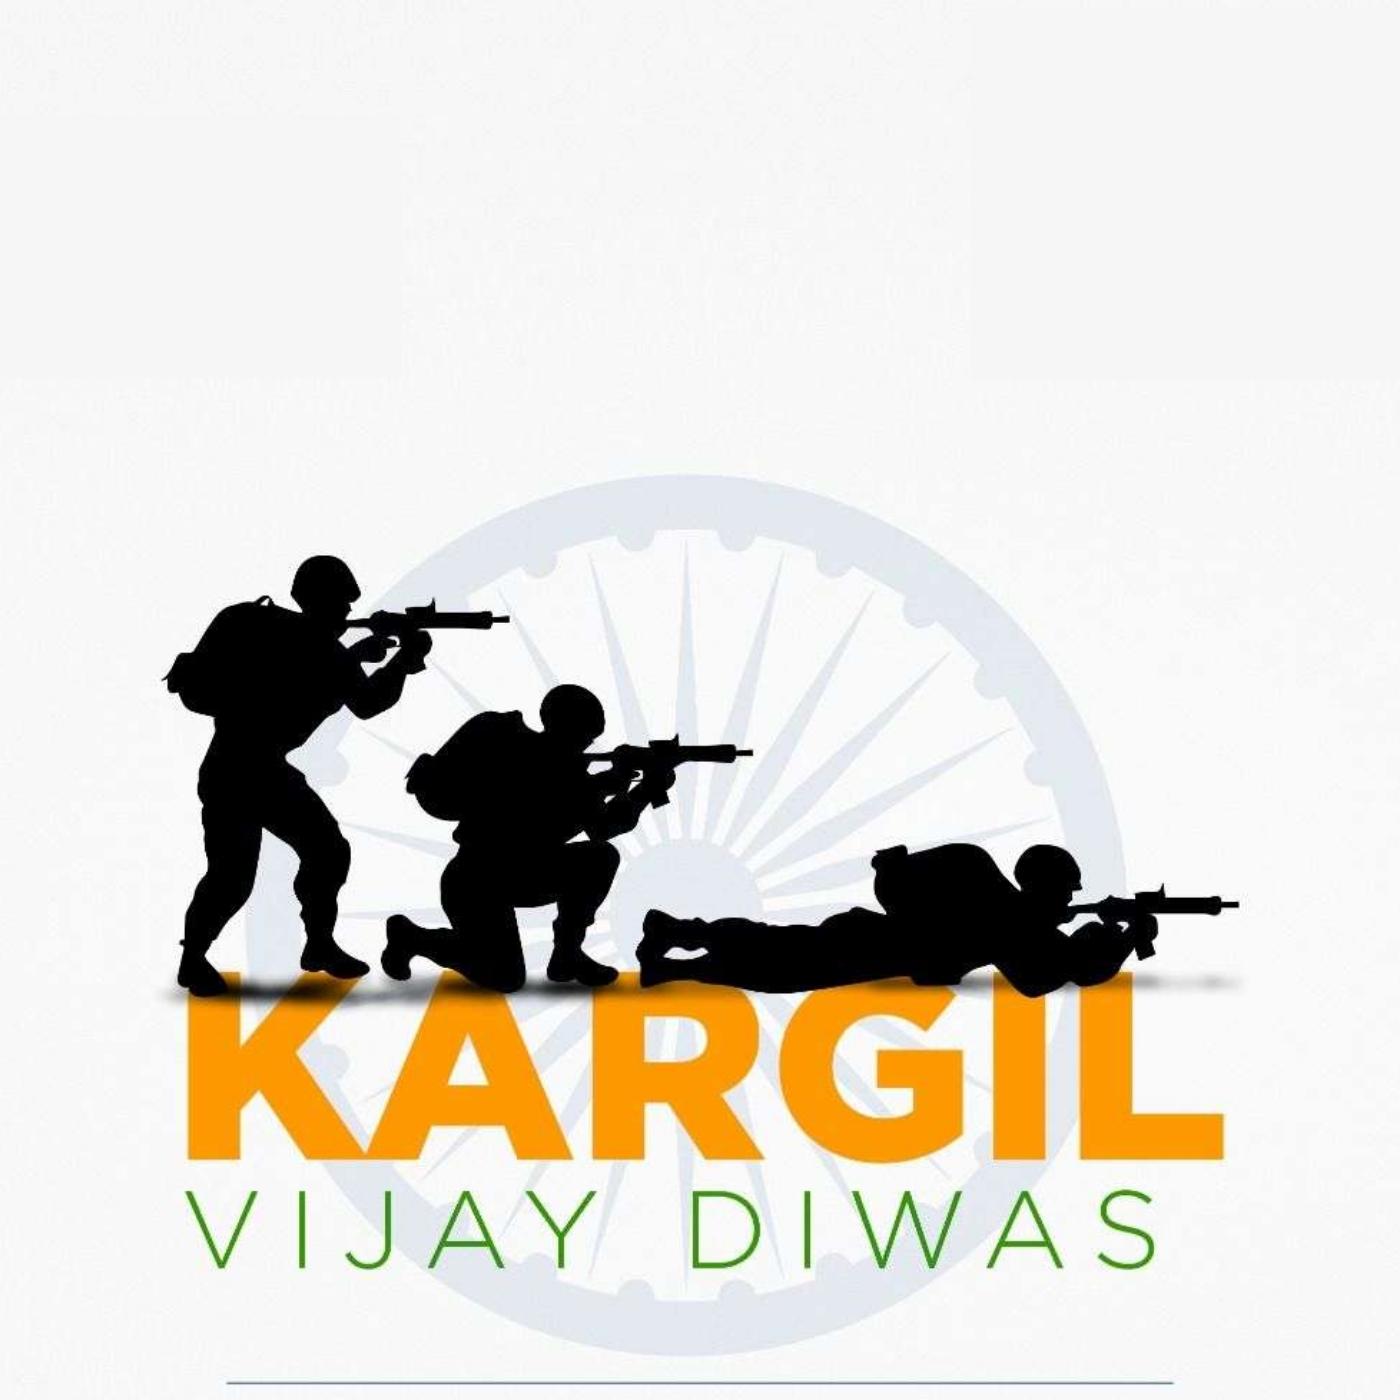 Kargil Vijay Diwas Images Hd